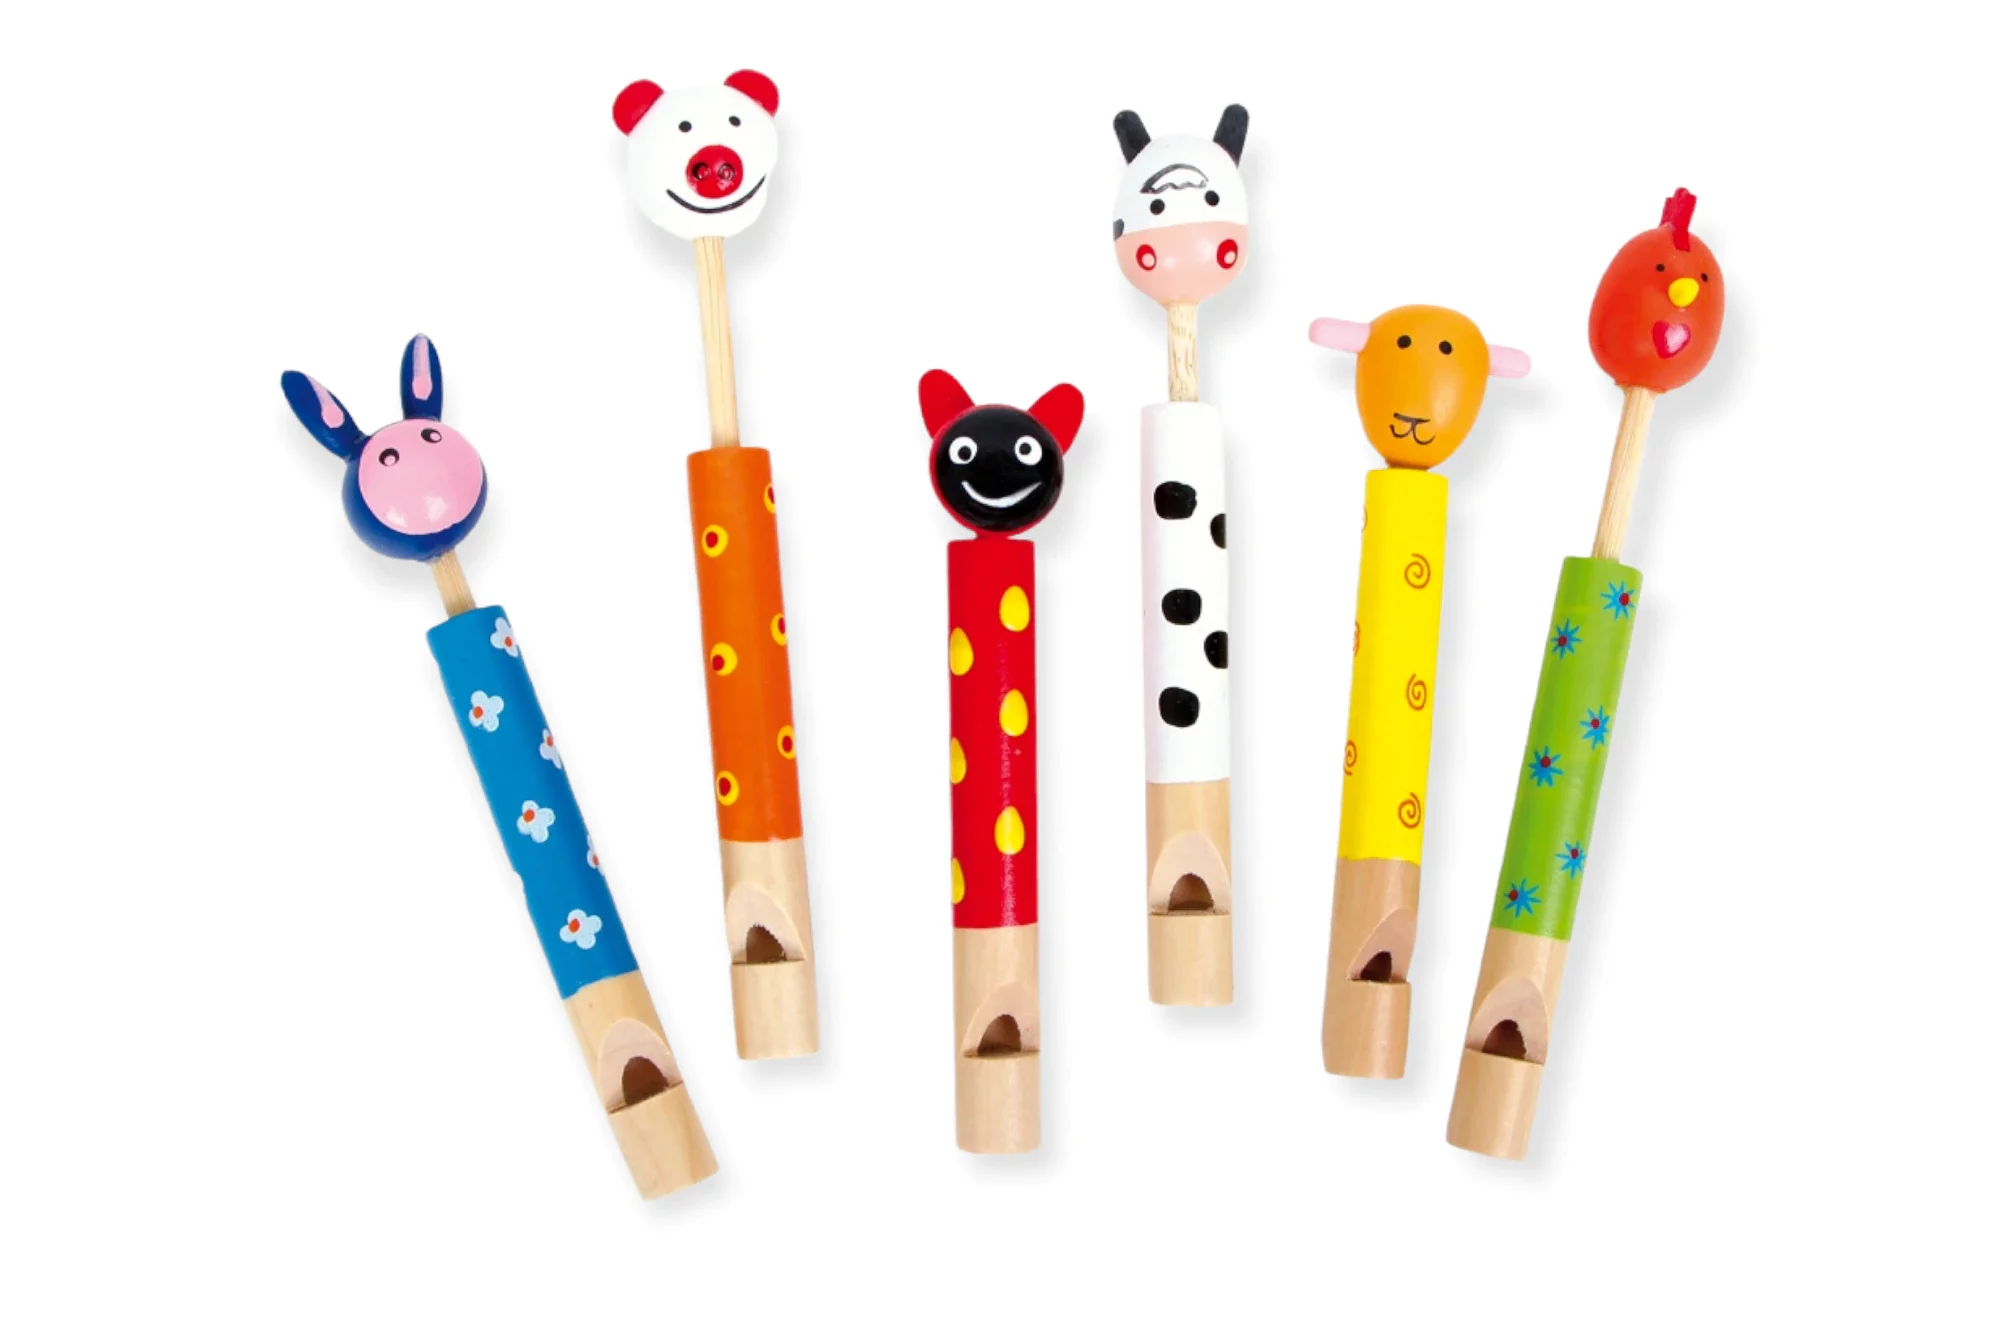 Set de 6 fluiere din lemn pentru copii, forme de animale, 12 cm lungime